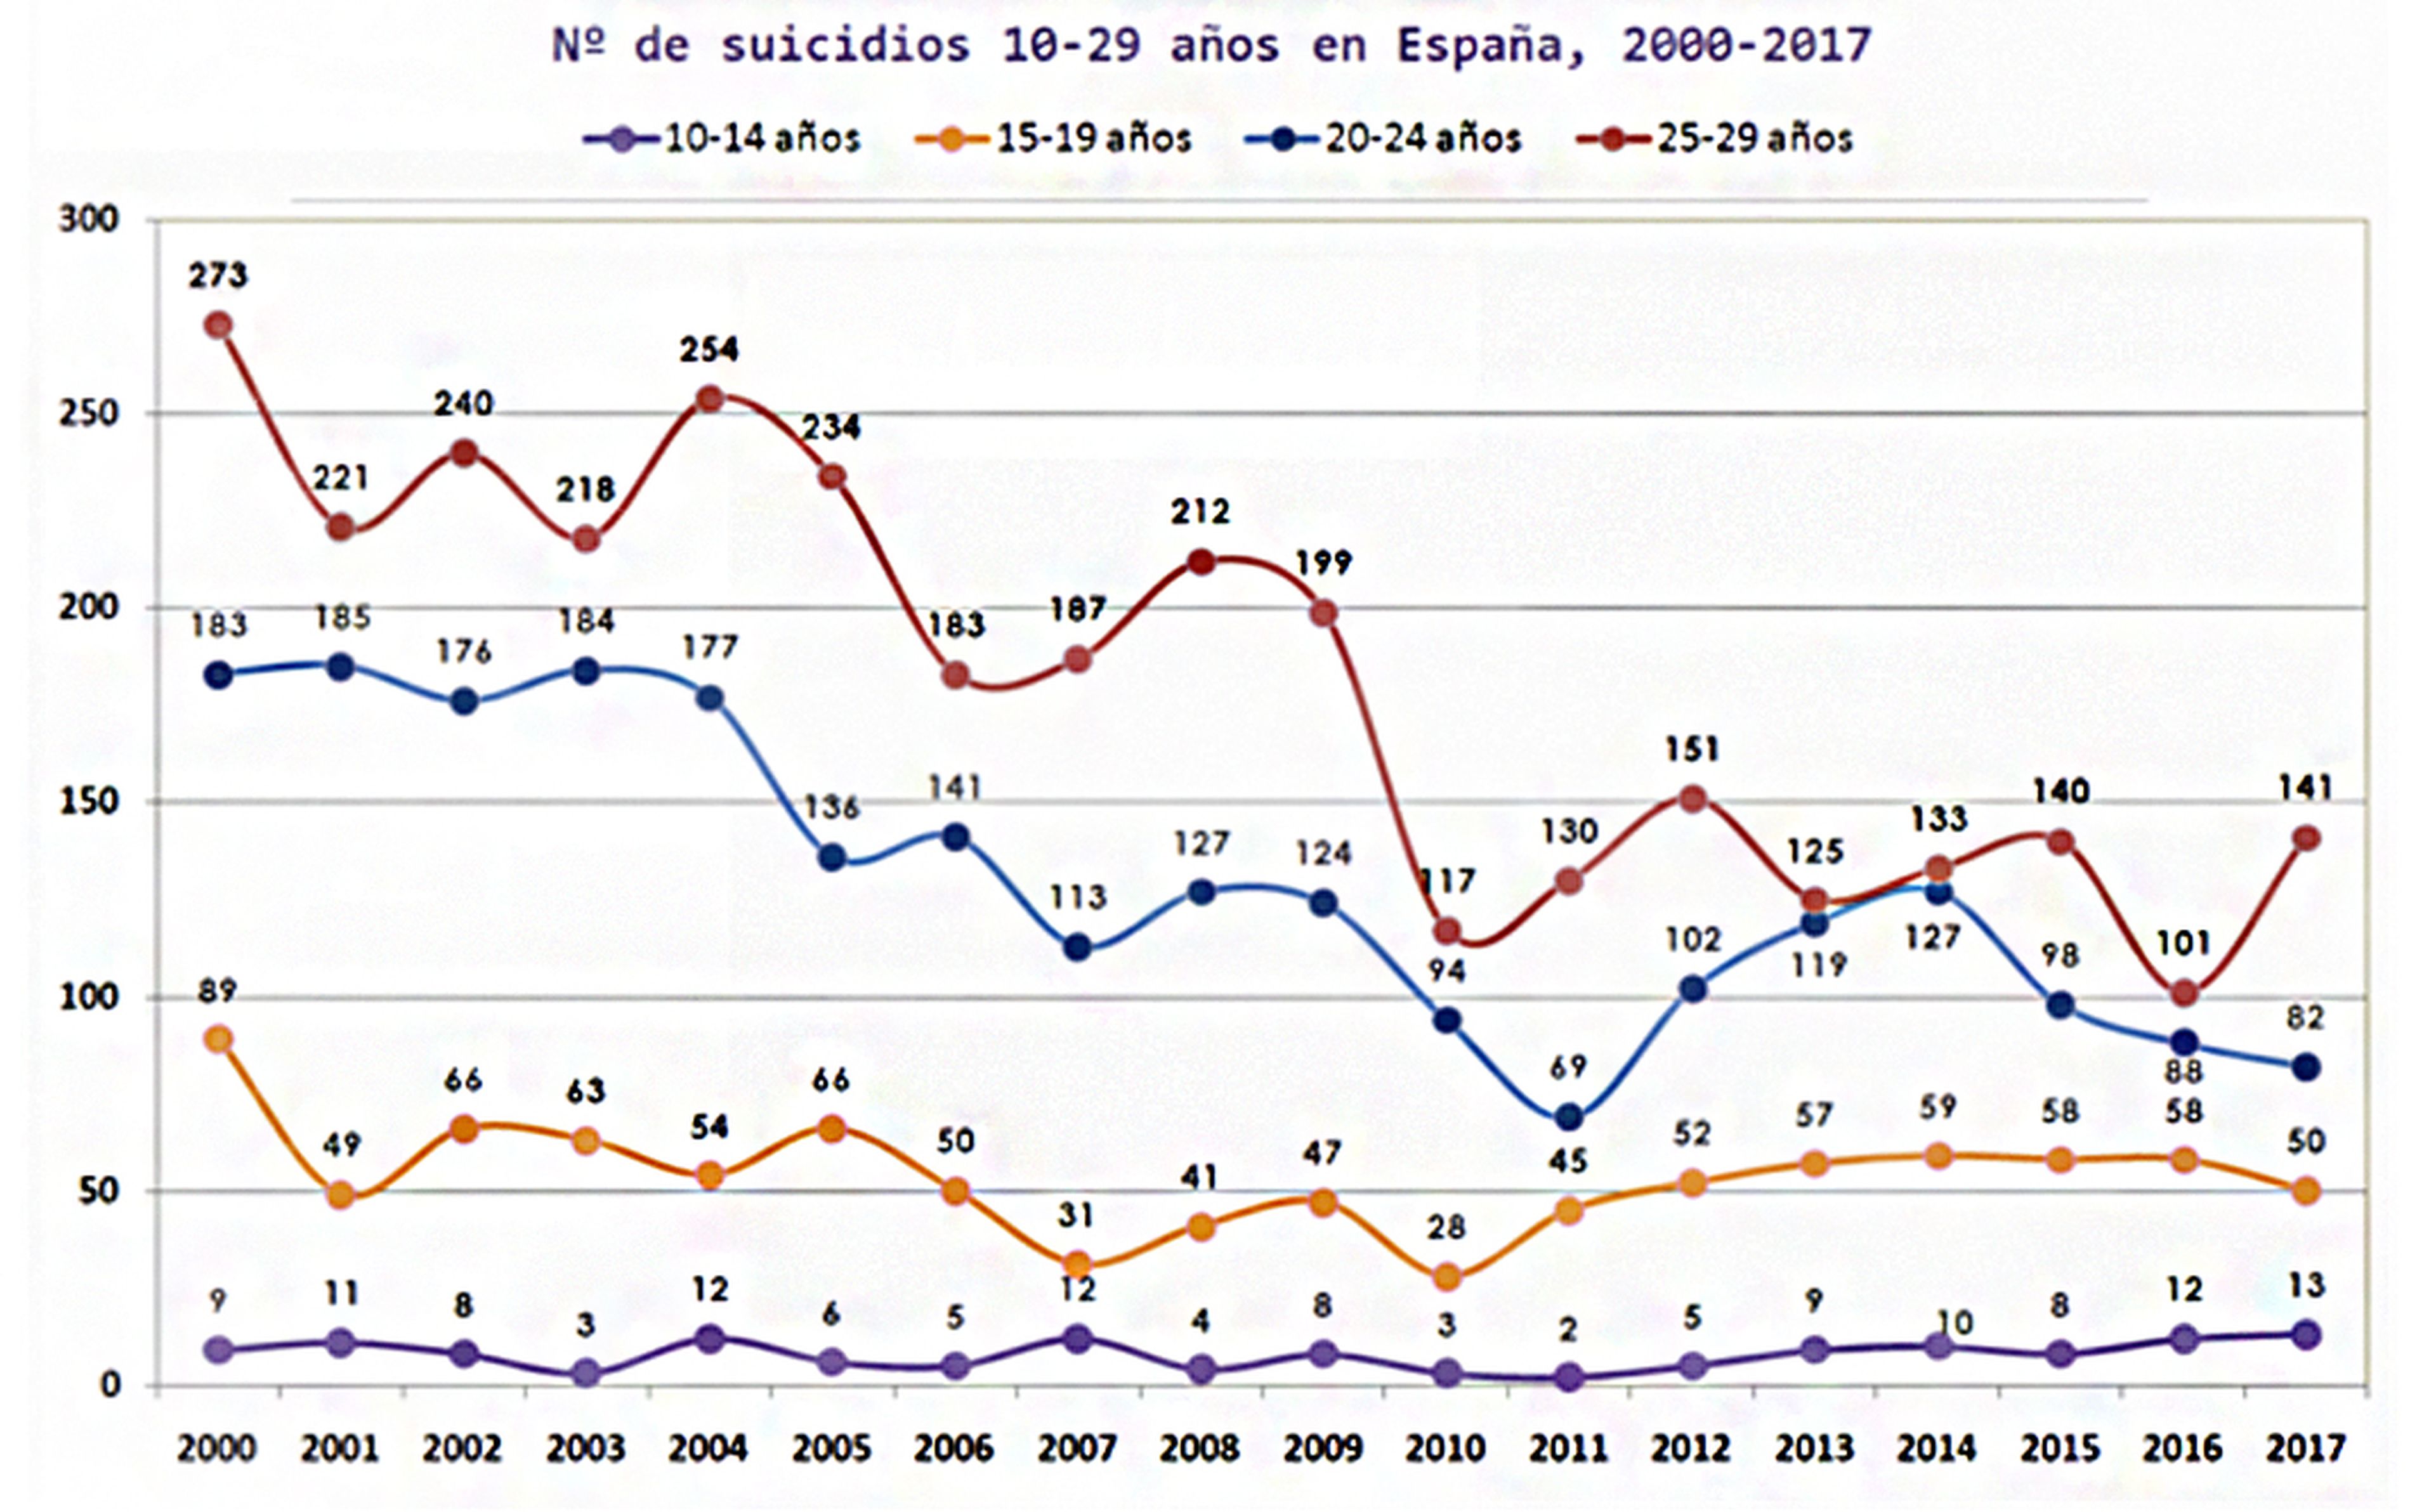 Sociedad Española de Suicidología